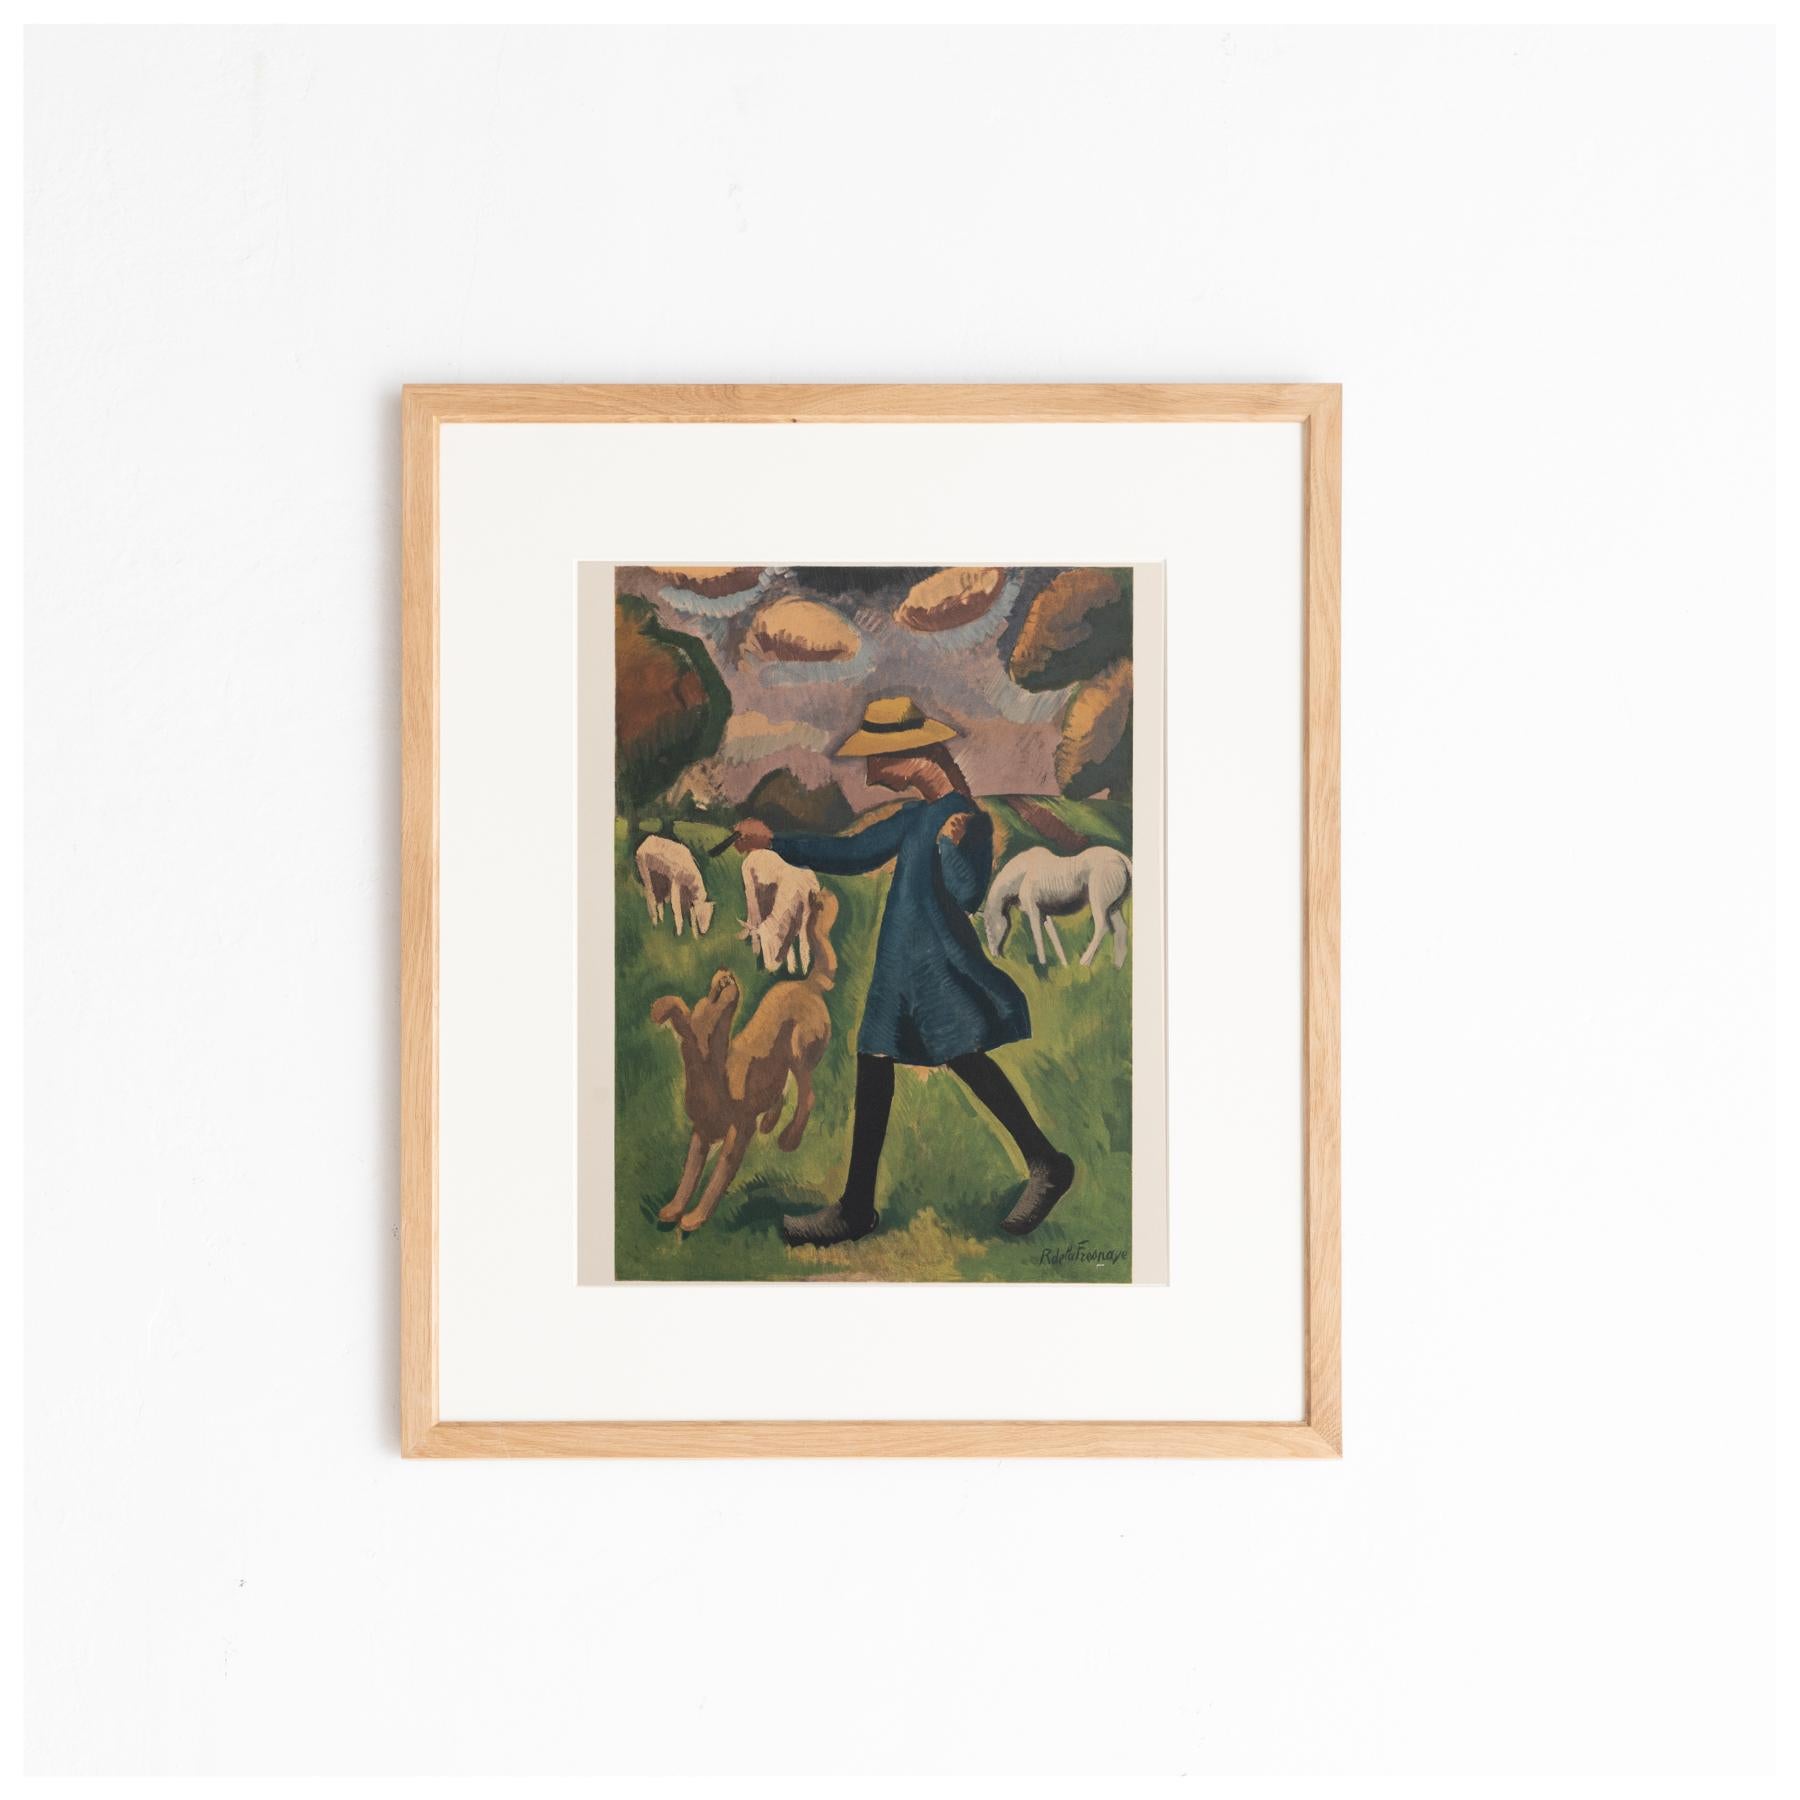 Lithographie originale en couleurs 'La gardeuse de moutons' de Roger de la Fresnaye.

Lithographie imprimée à partir d'une peinture originale réalisée par l'auteur en France, vers 1909.

Publié en France par Fernand Mourlot, vers 1968.